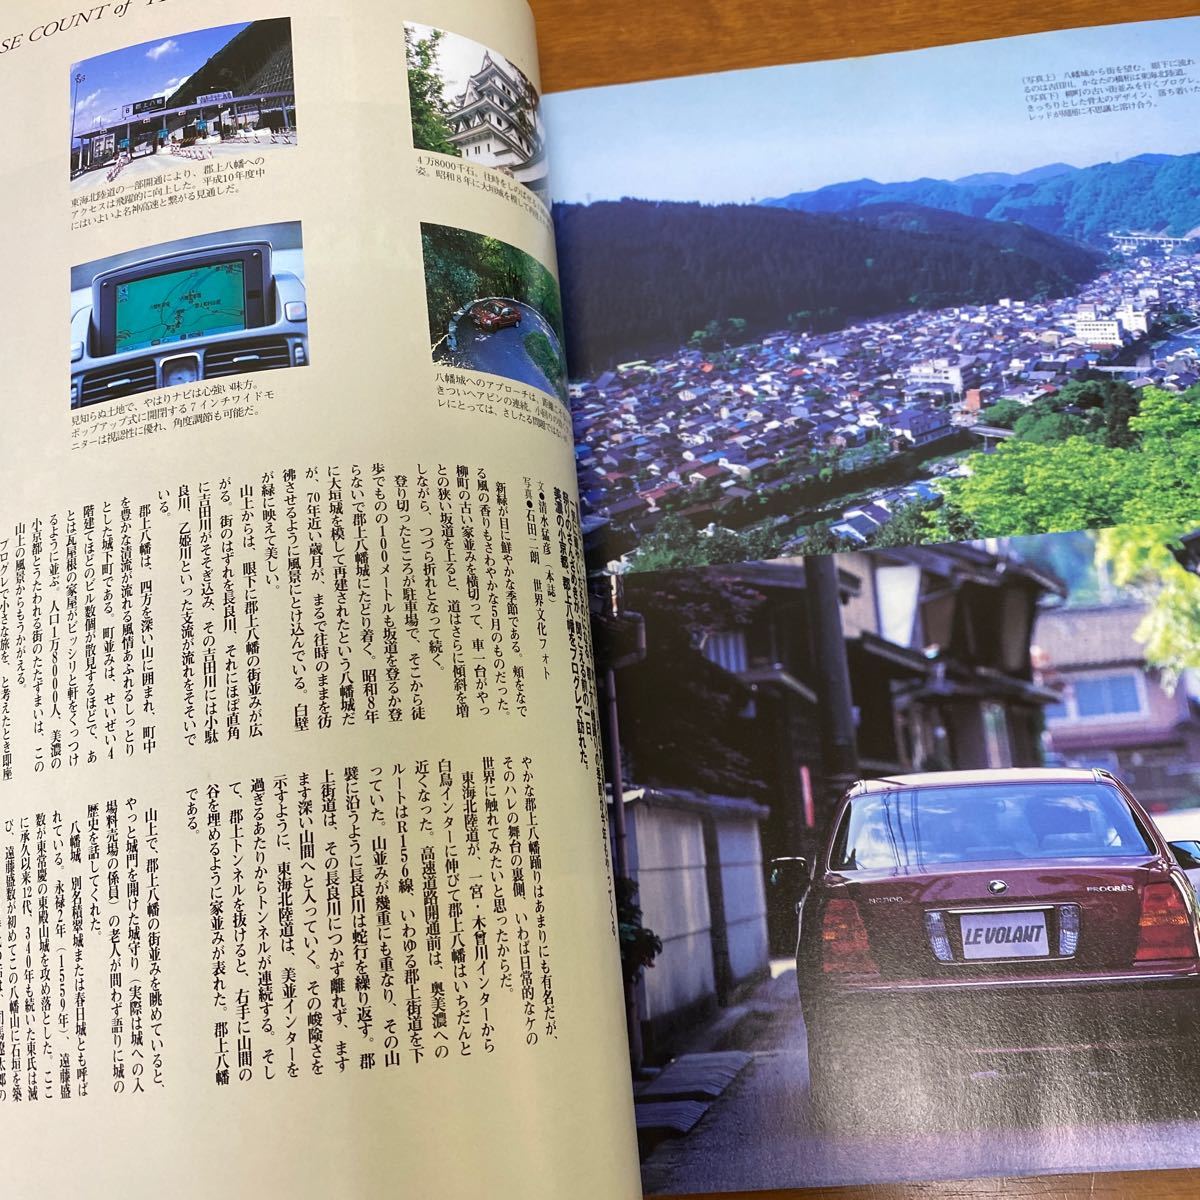 トヨタプログレ 高級車の21世紀基準(立風ベストムック ルボラン LE VOLANT 特別編集) 1998年7月14日発行 ※すべてシリーズに似た本です_画像9